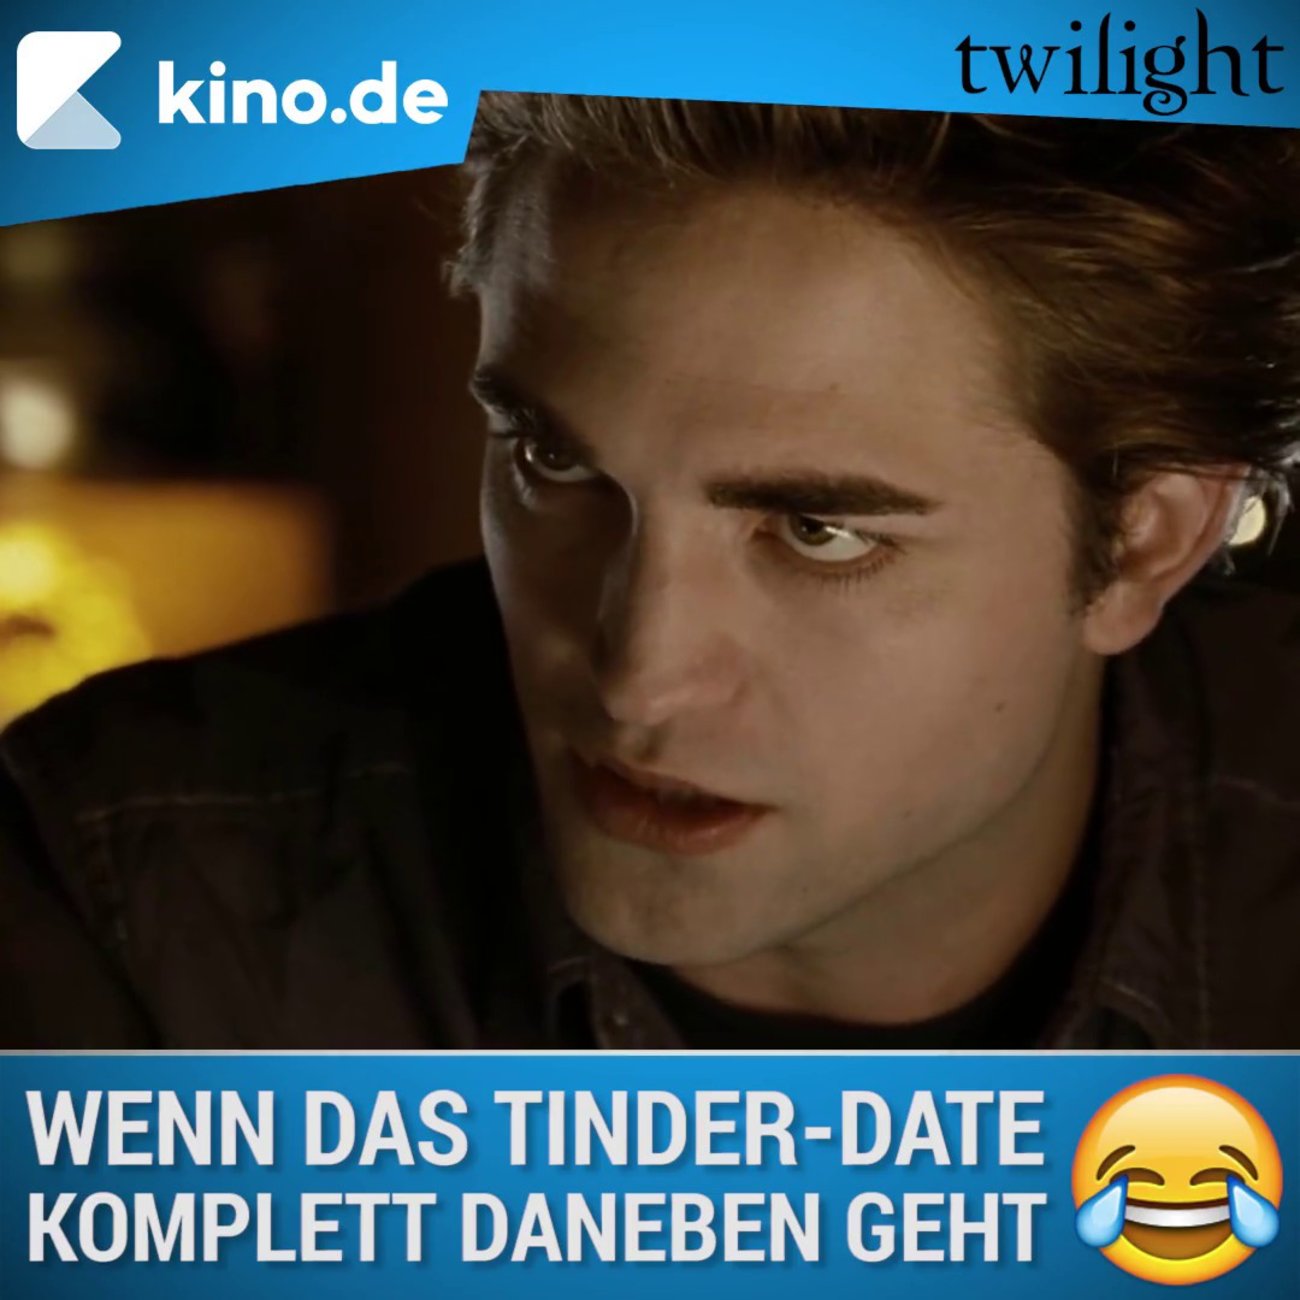 Twilight-Parodie: Wenn das Tinder-Date komplett daneben geht (Video)